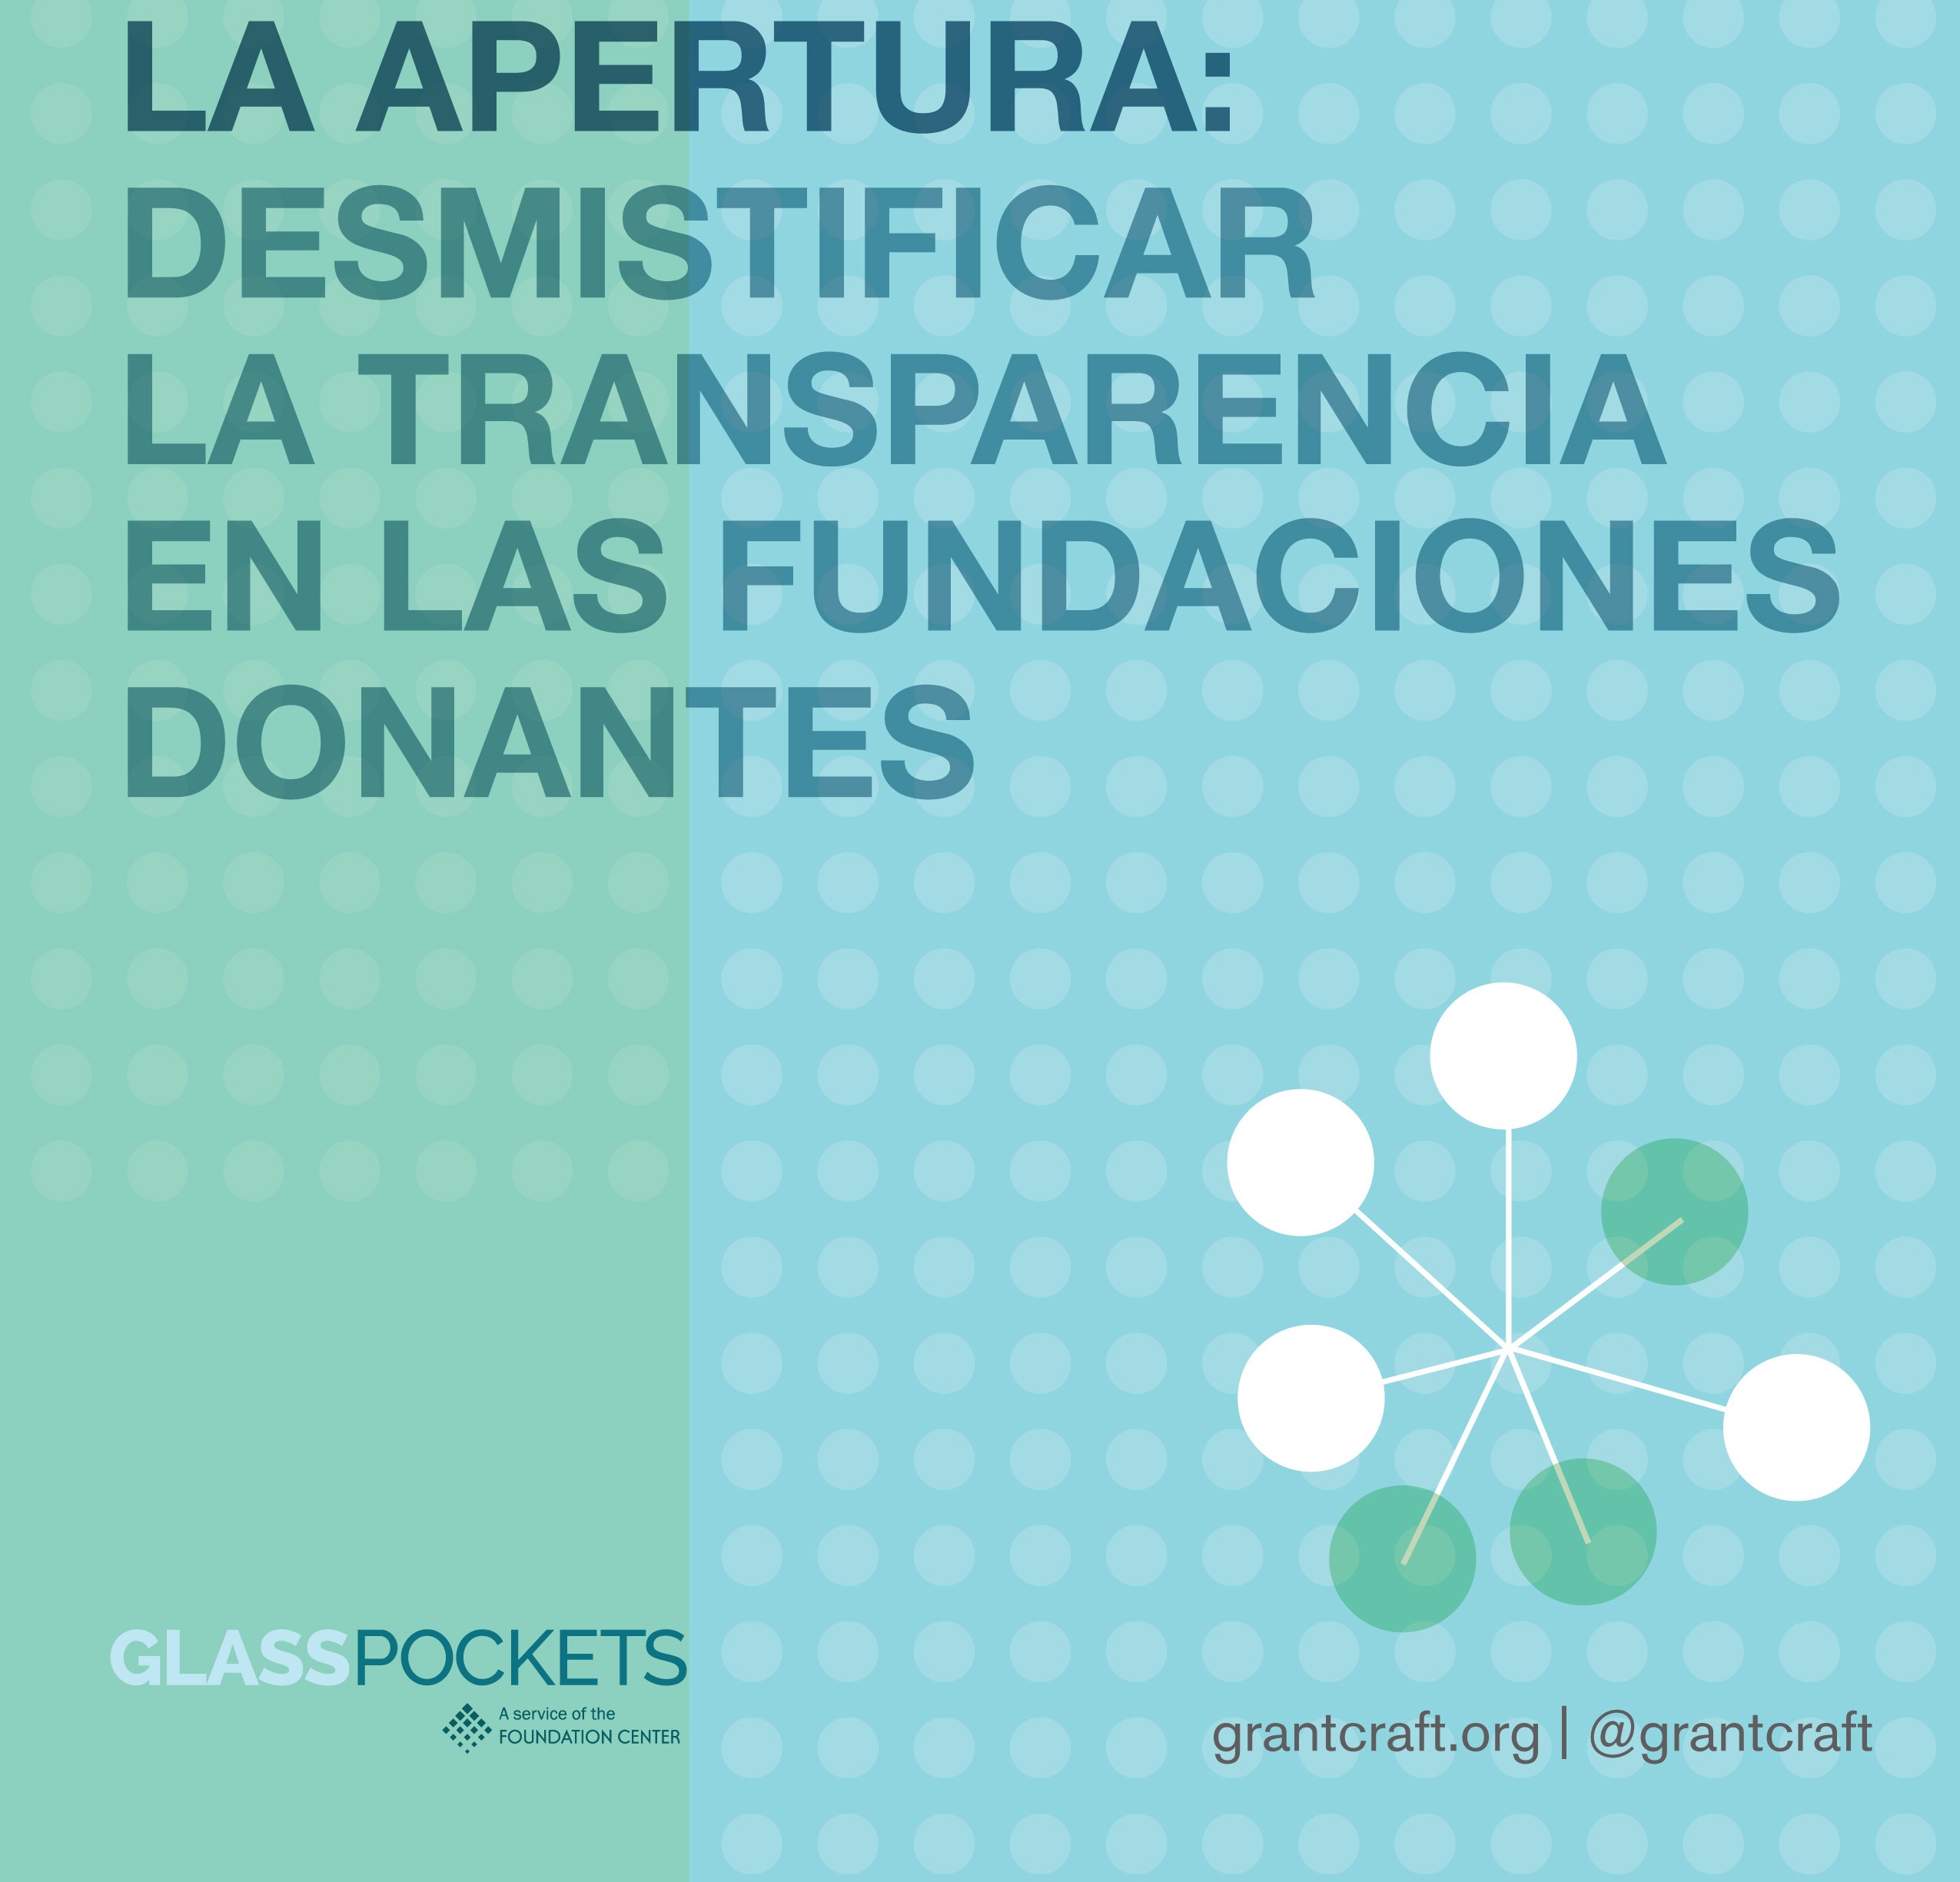 La Apertura: Demistificar la transparencia en las fundaciones donantes